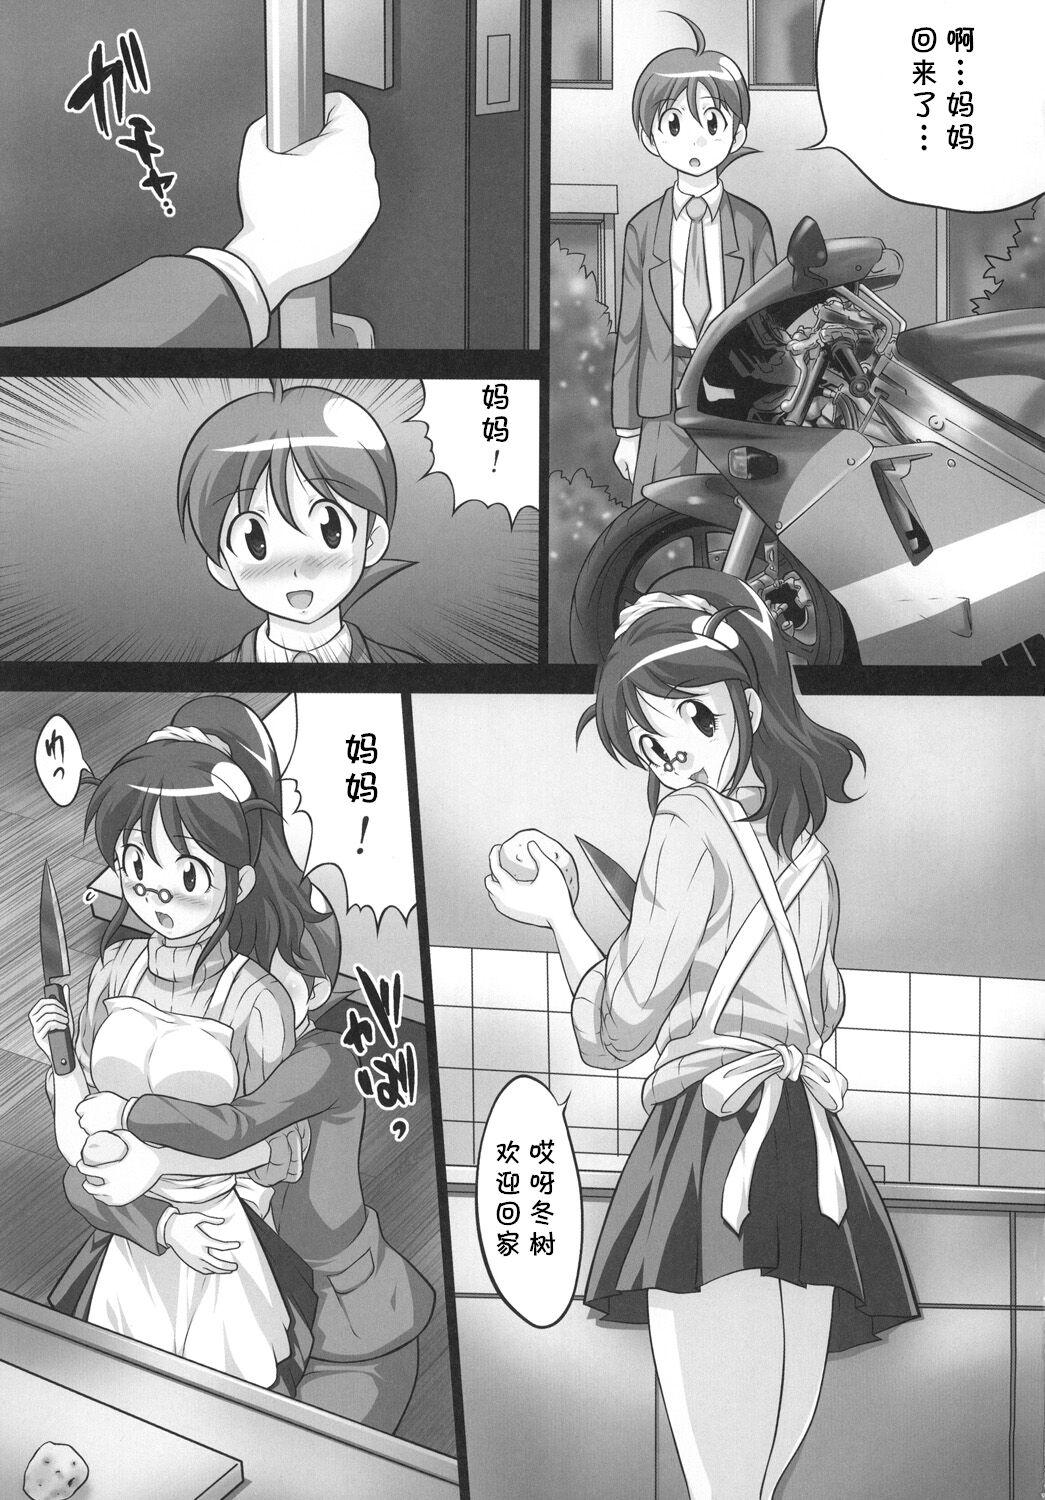 Orgia Chikyuujin Maruhi Seitai Chousa Houkokusho 6 - Keroro gunsou | sgt. frog Hand Job - Page 2